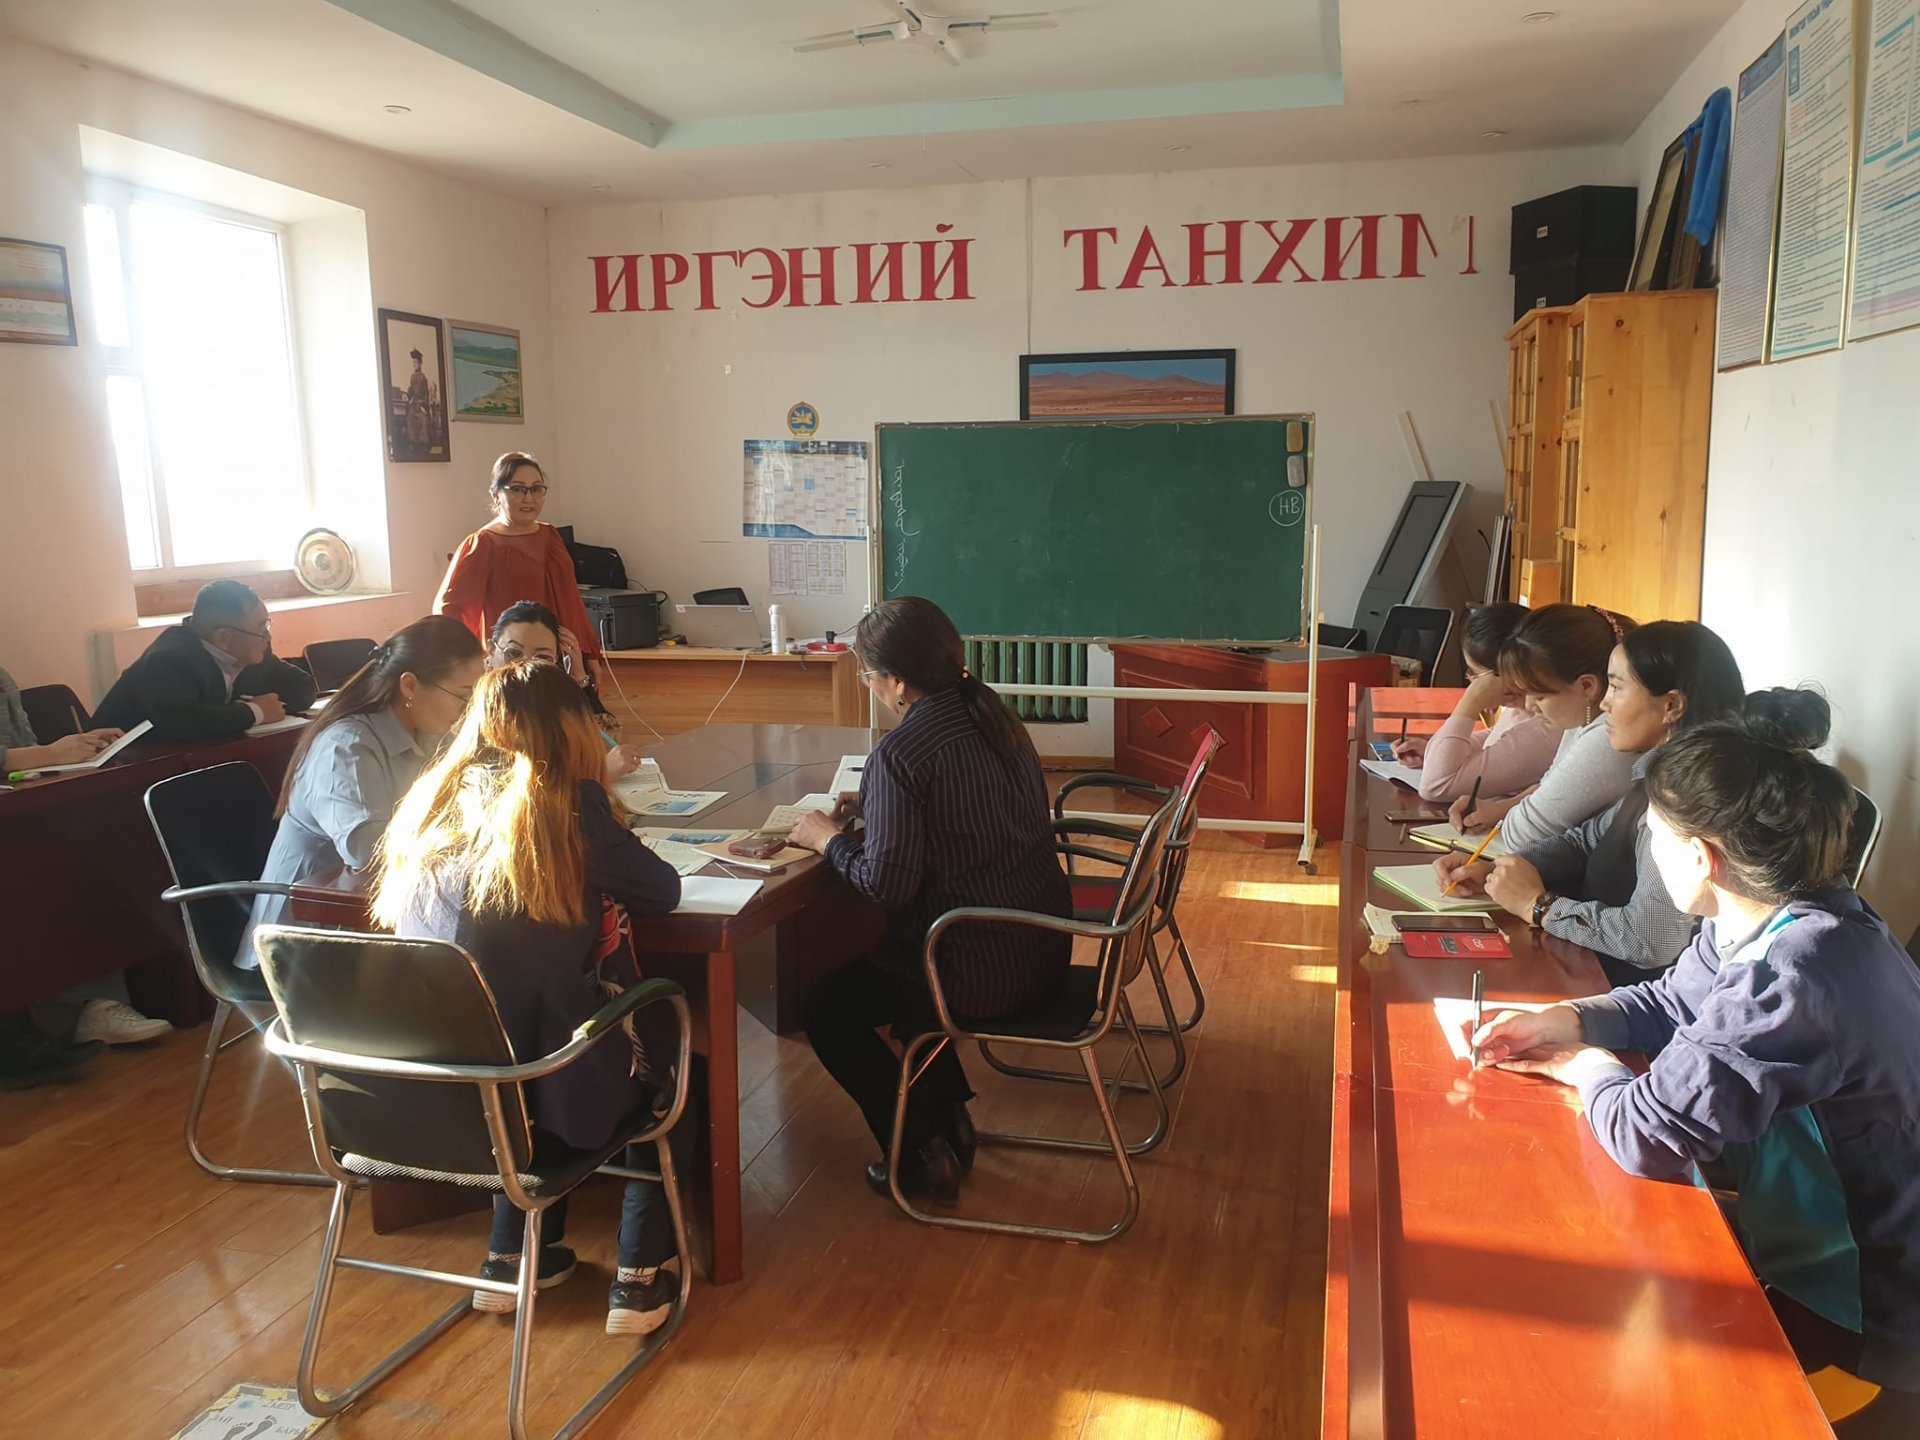 Төрийн албан хаагчид Монгол бичгийн хичээлд хамрагдаж байна